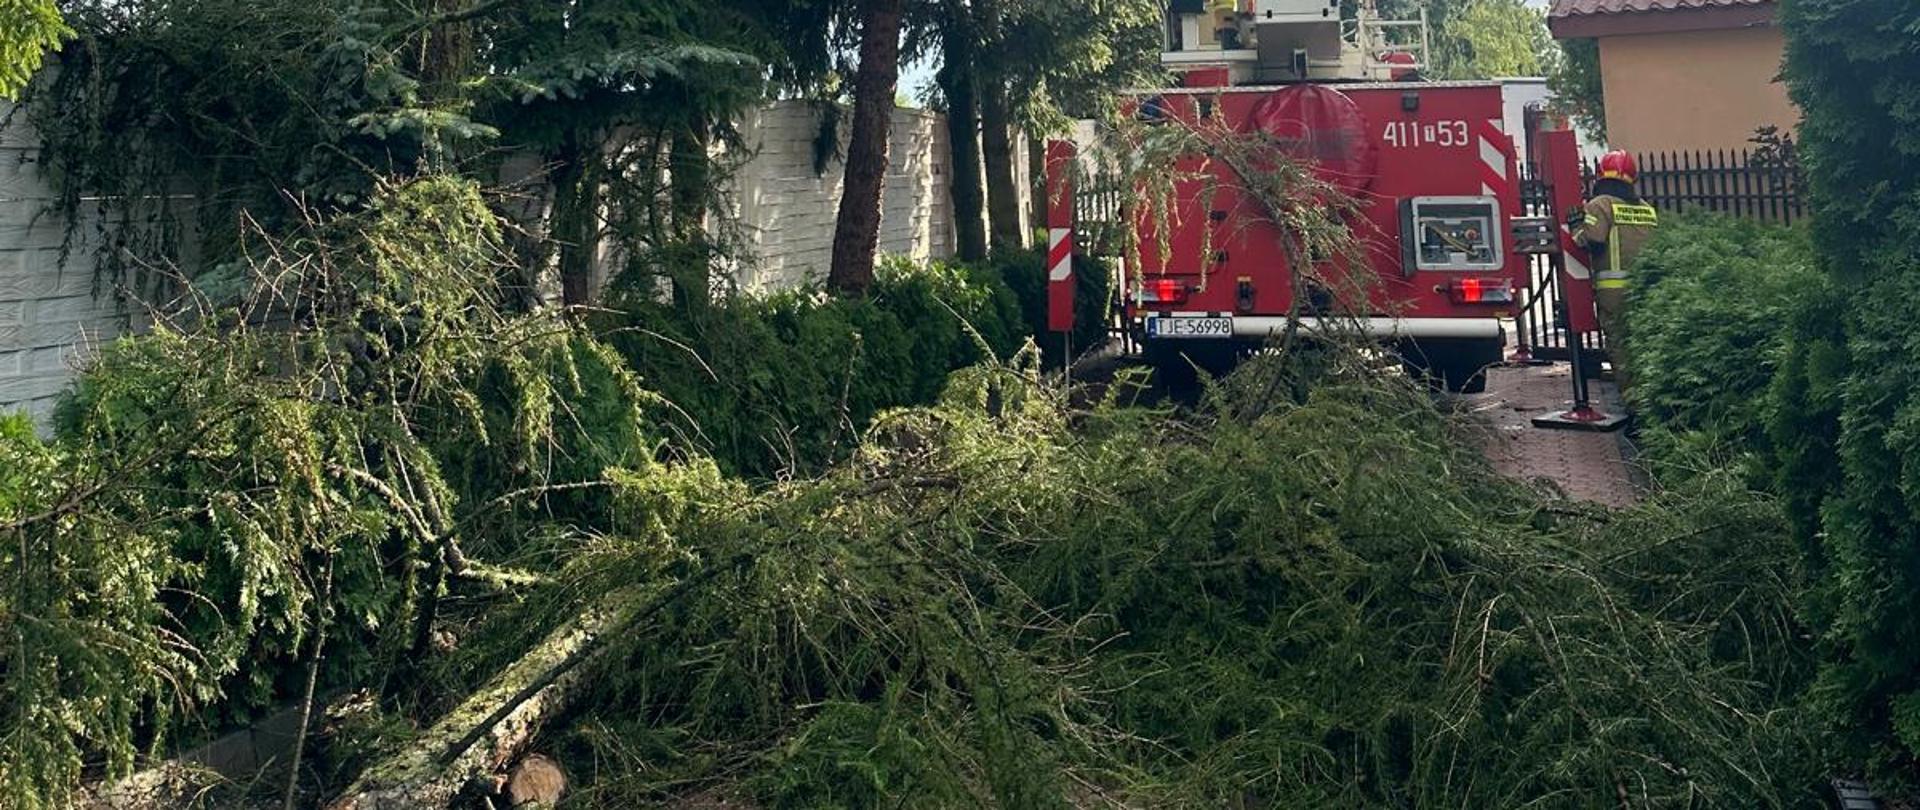 Na zdjęciu rozłożony podnośnik hydrauliczny, który usuwa połamane konary drzewa przy posesji. Obok pojazdu strażak w umundurowaniu specjalnym.